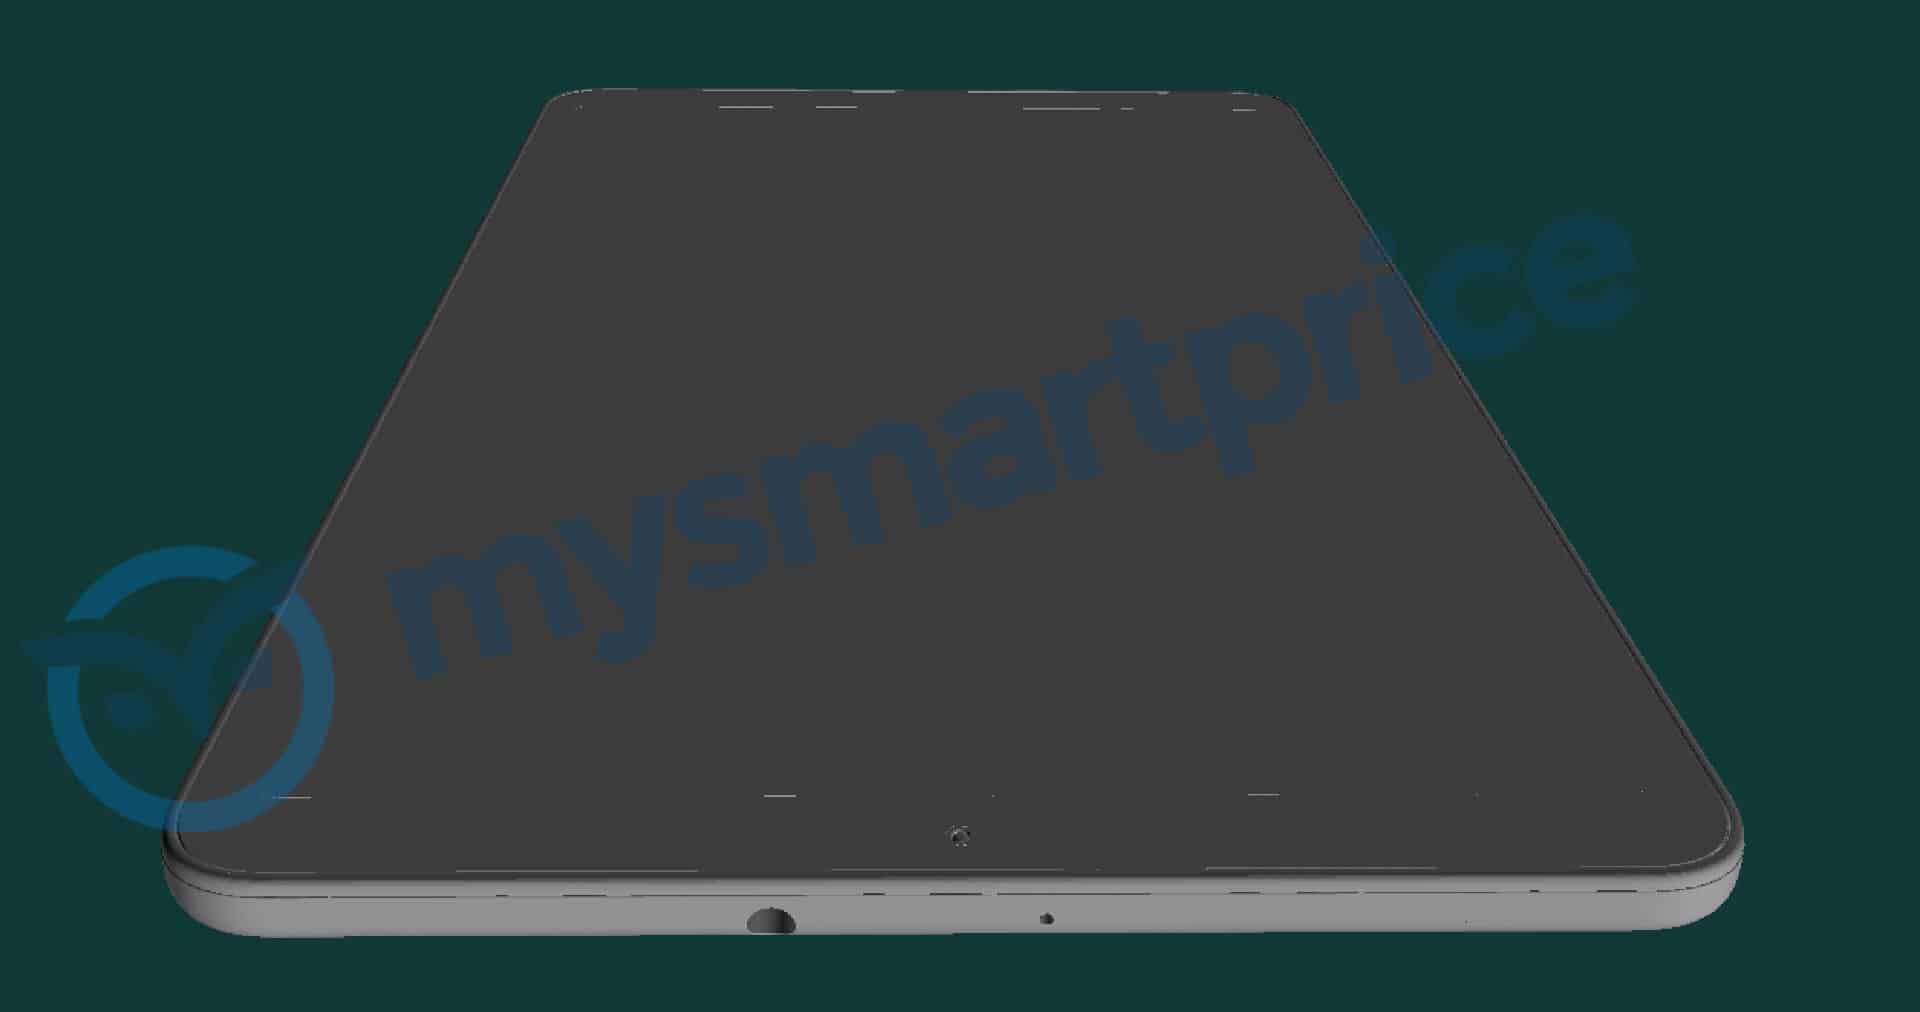 Spesifikasi tablet baru Samsung muncul di Geekbench